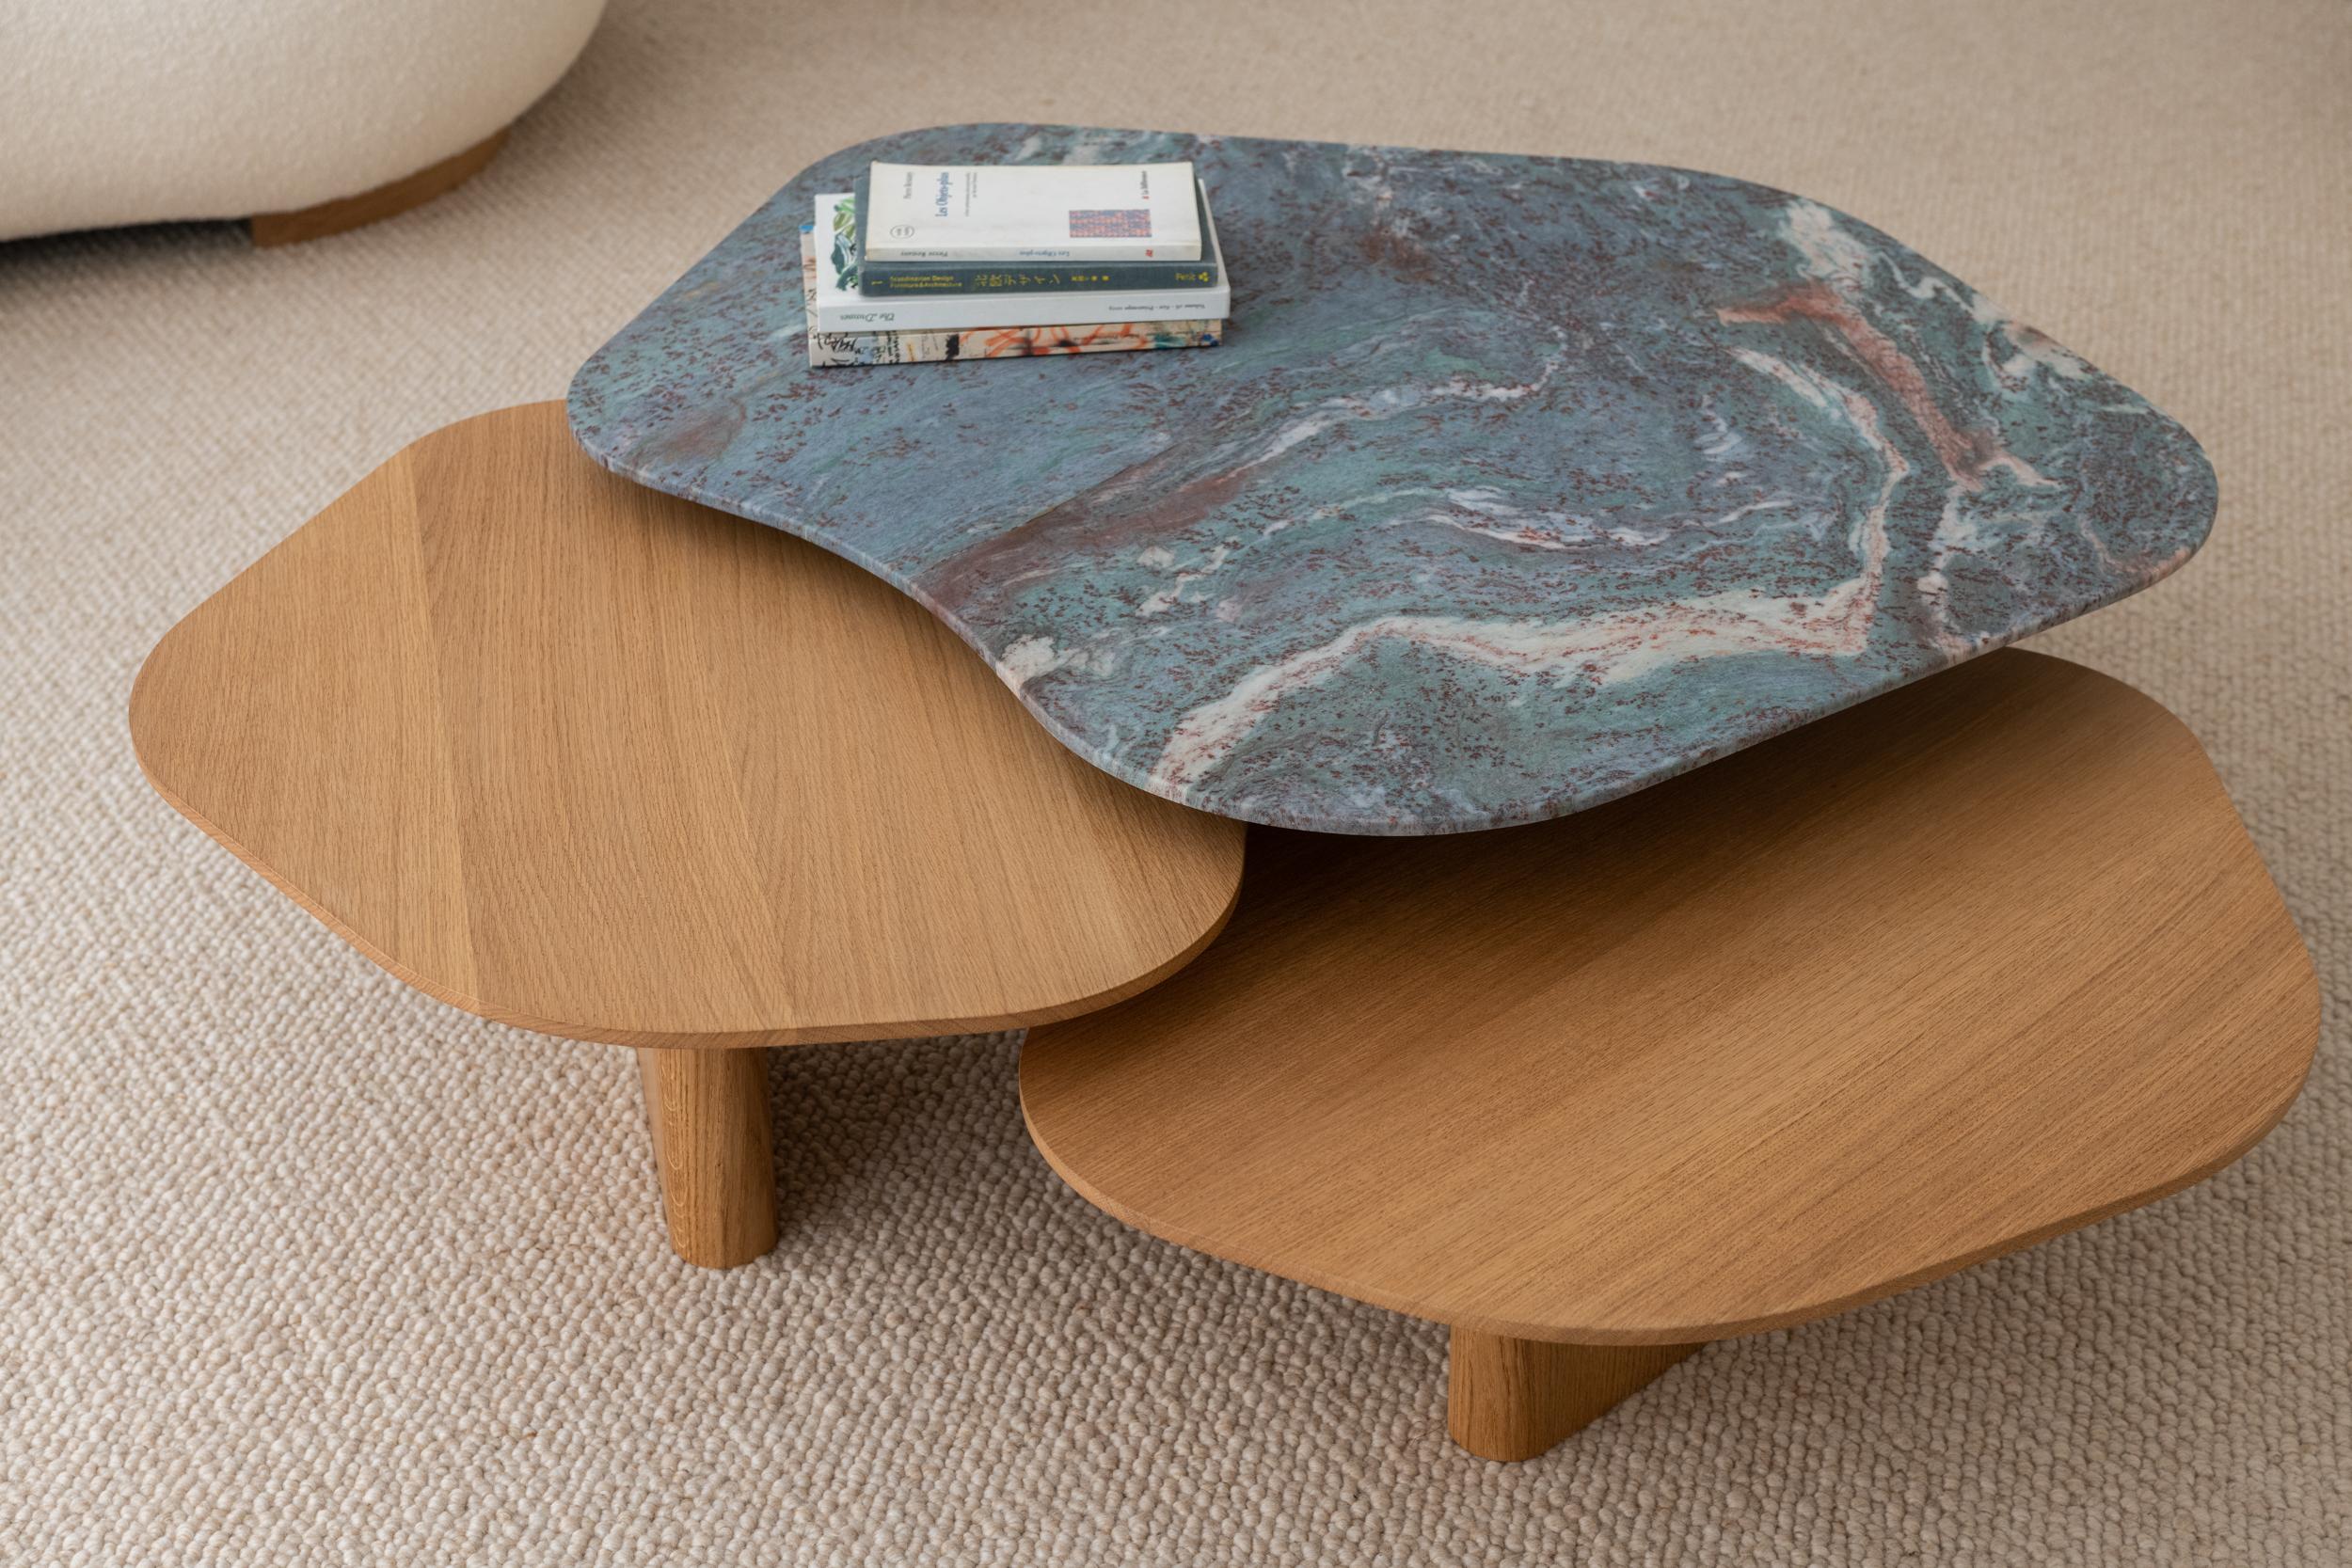 La table basse EOT-1 est fabriquée à la main sur commande par des artisans experts en France.

La version avec le granit brésilien 